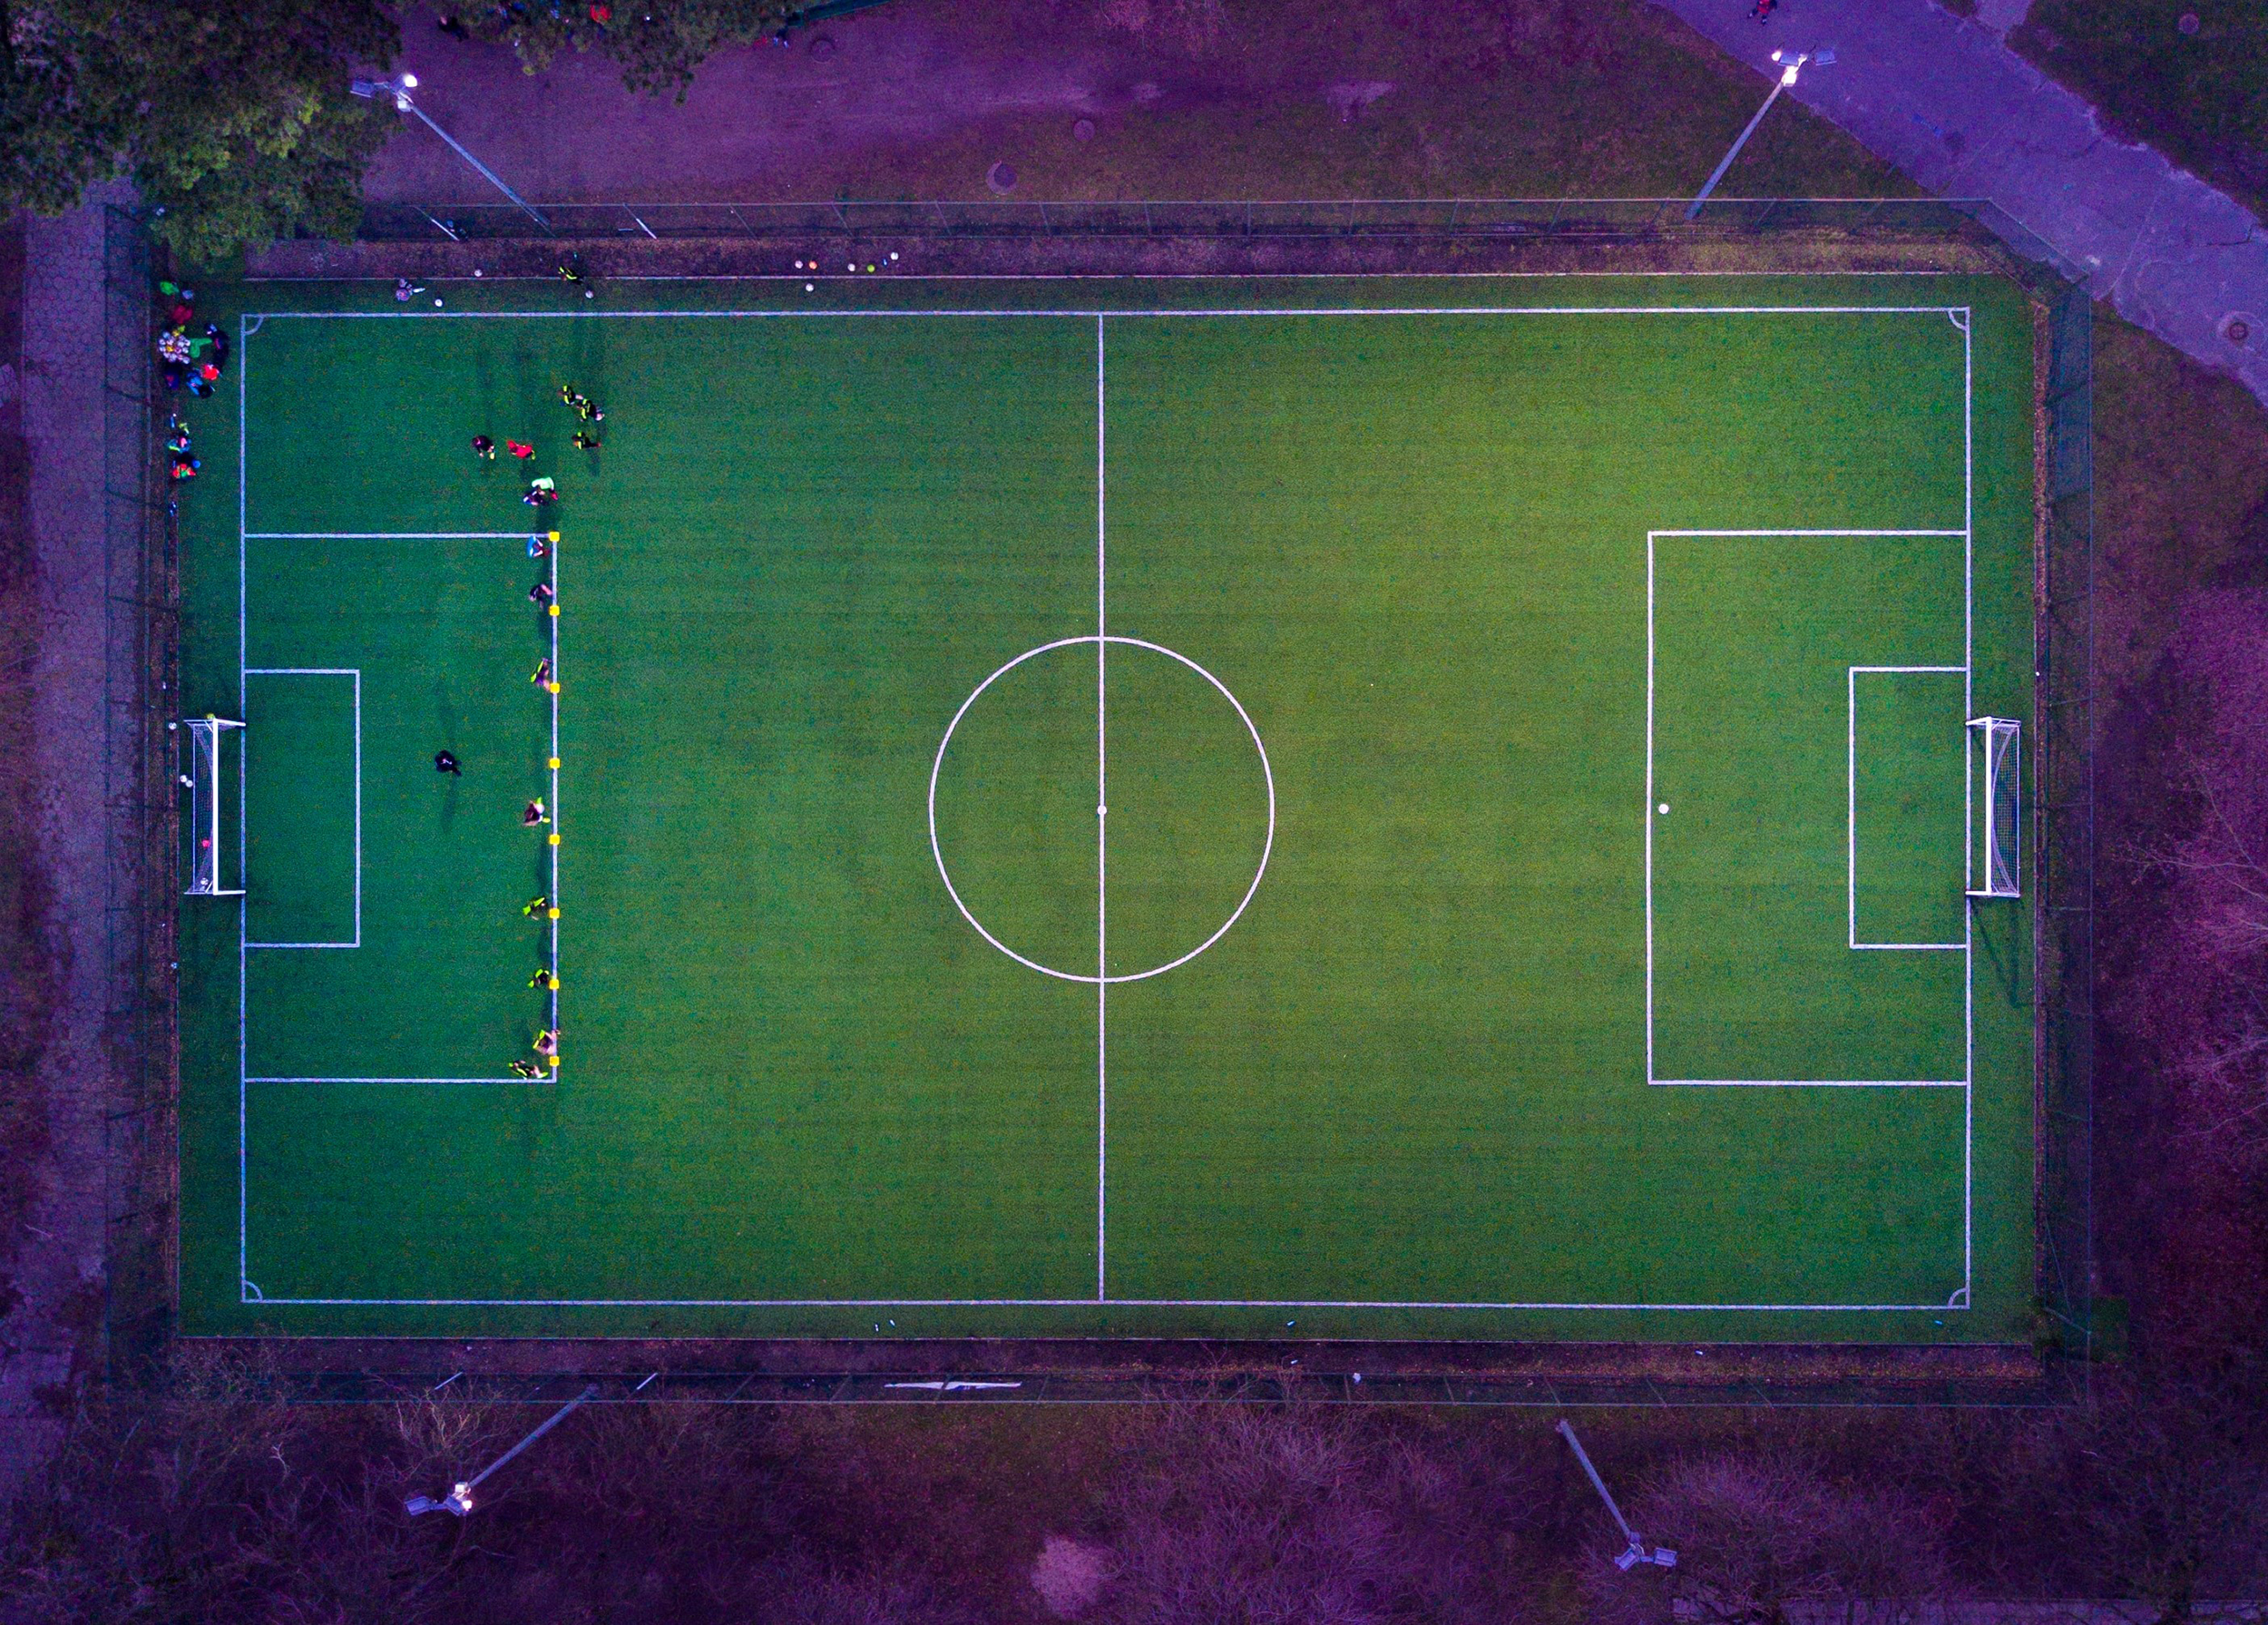 Soccer Football Field - 3D Model by PPro